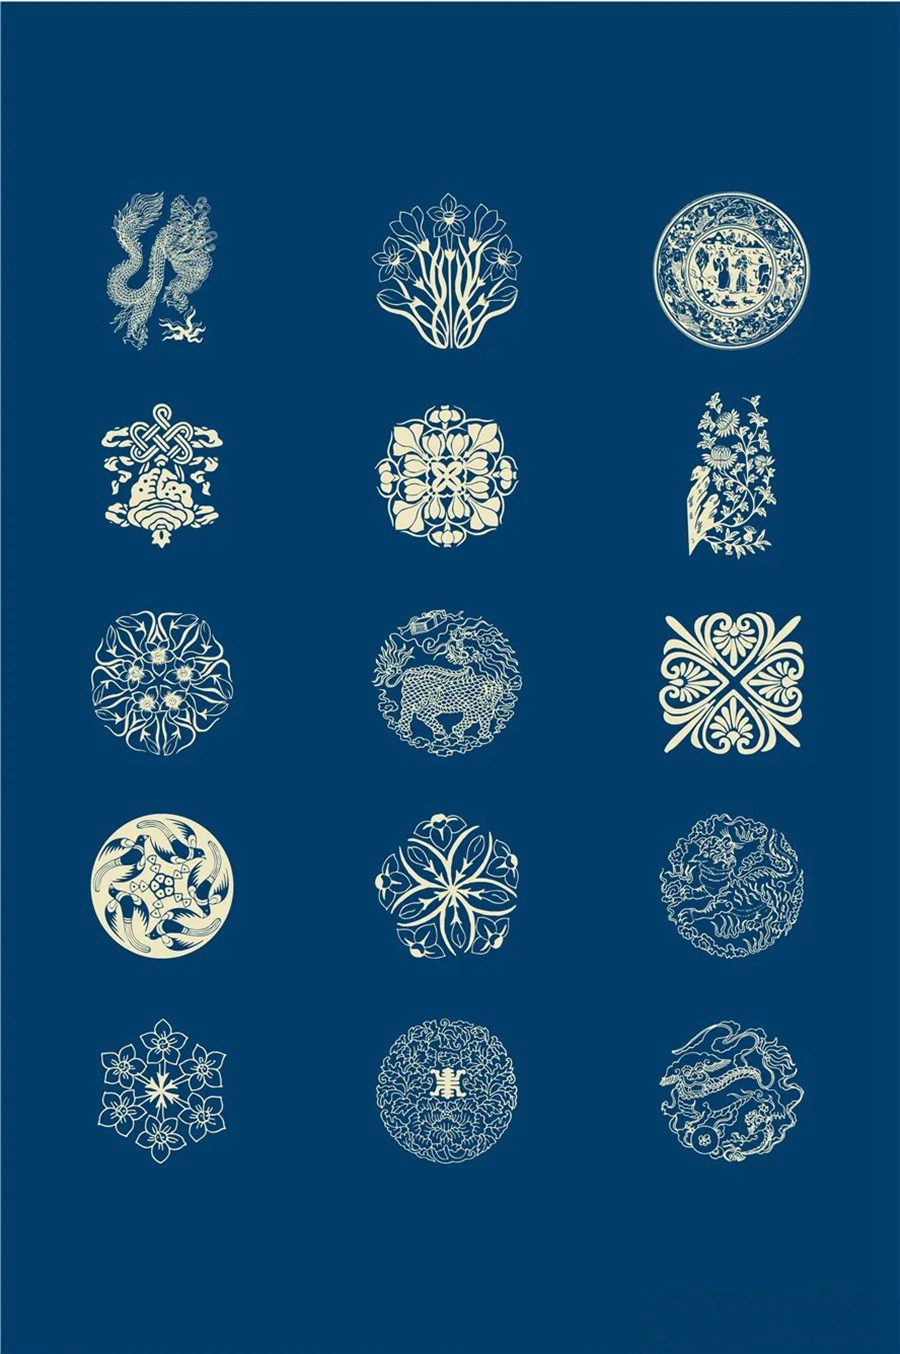 中国风传统古典青花瓷图案花纹图形纹样AI矢量模板花纹设计素材 图片素材 第12张